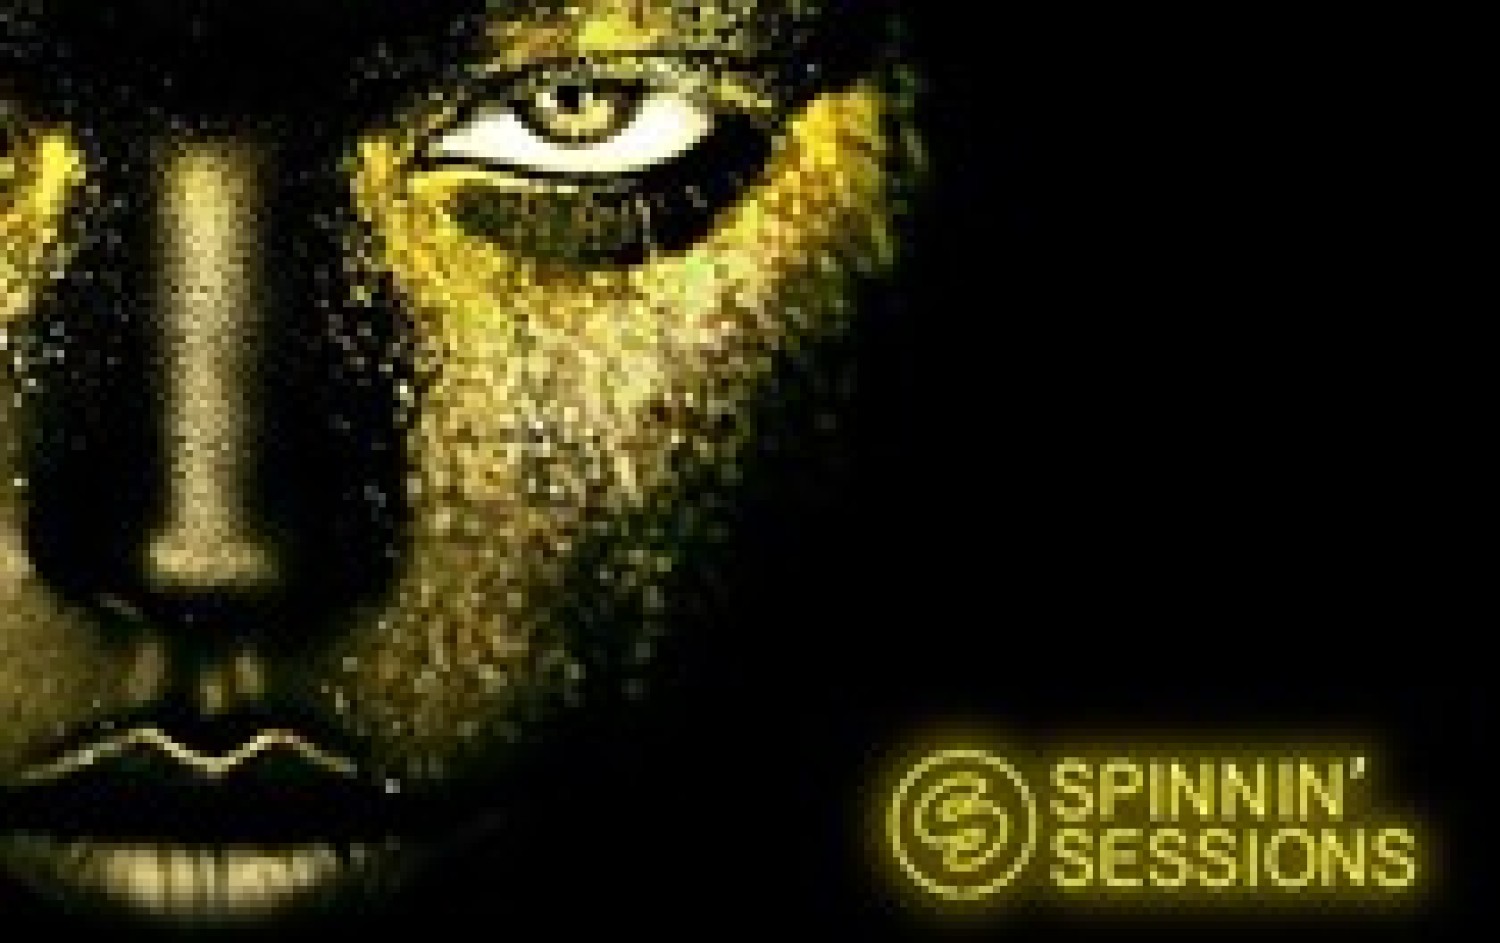 Party nieuws: Spinnin’ Sessions maakt eerste deel line-up bekend